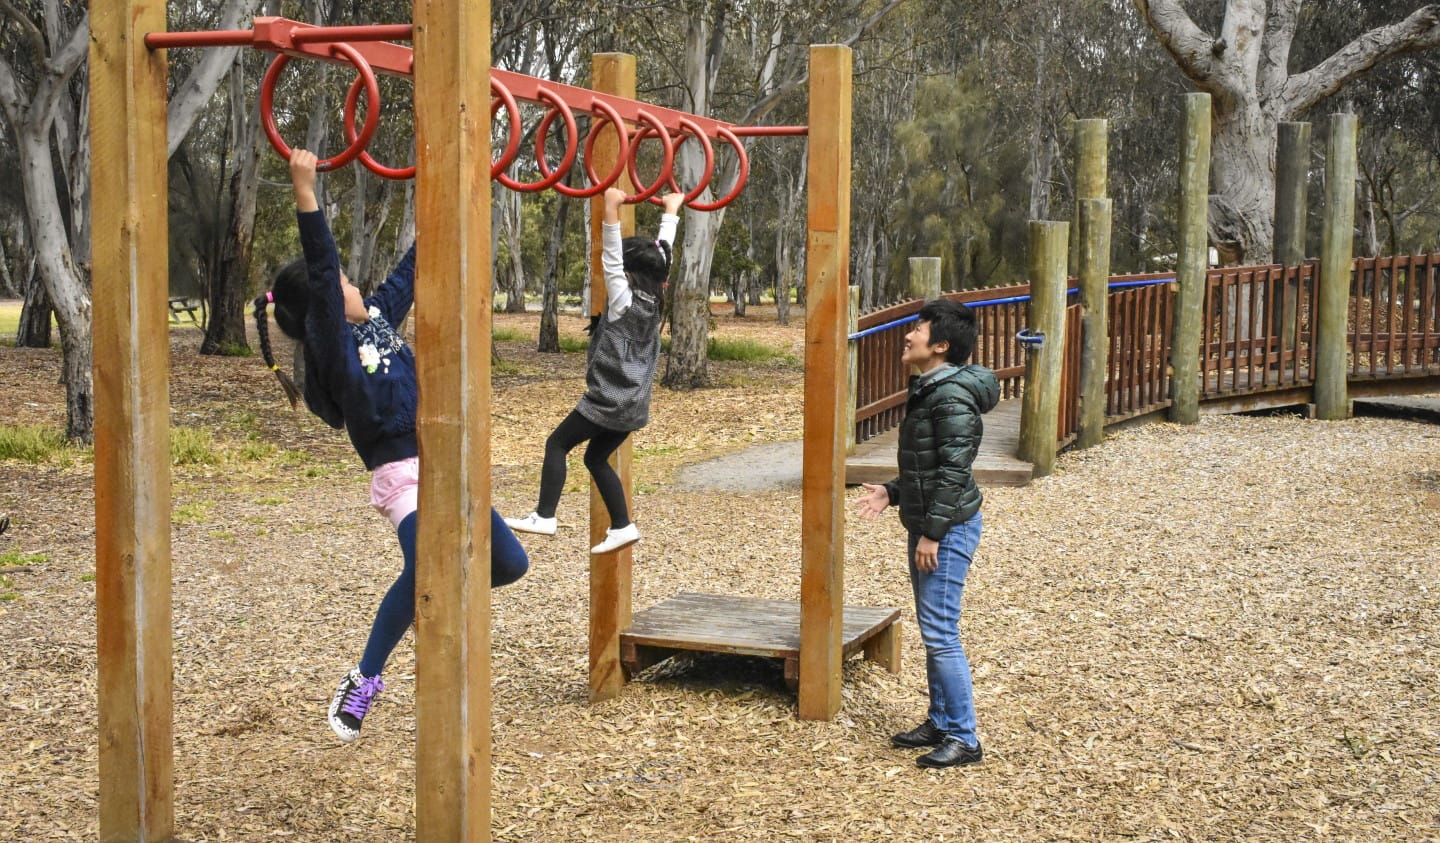 Children play at Braeside Park